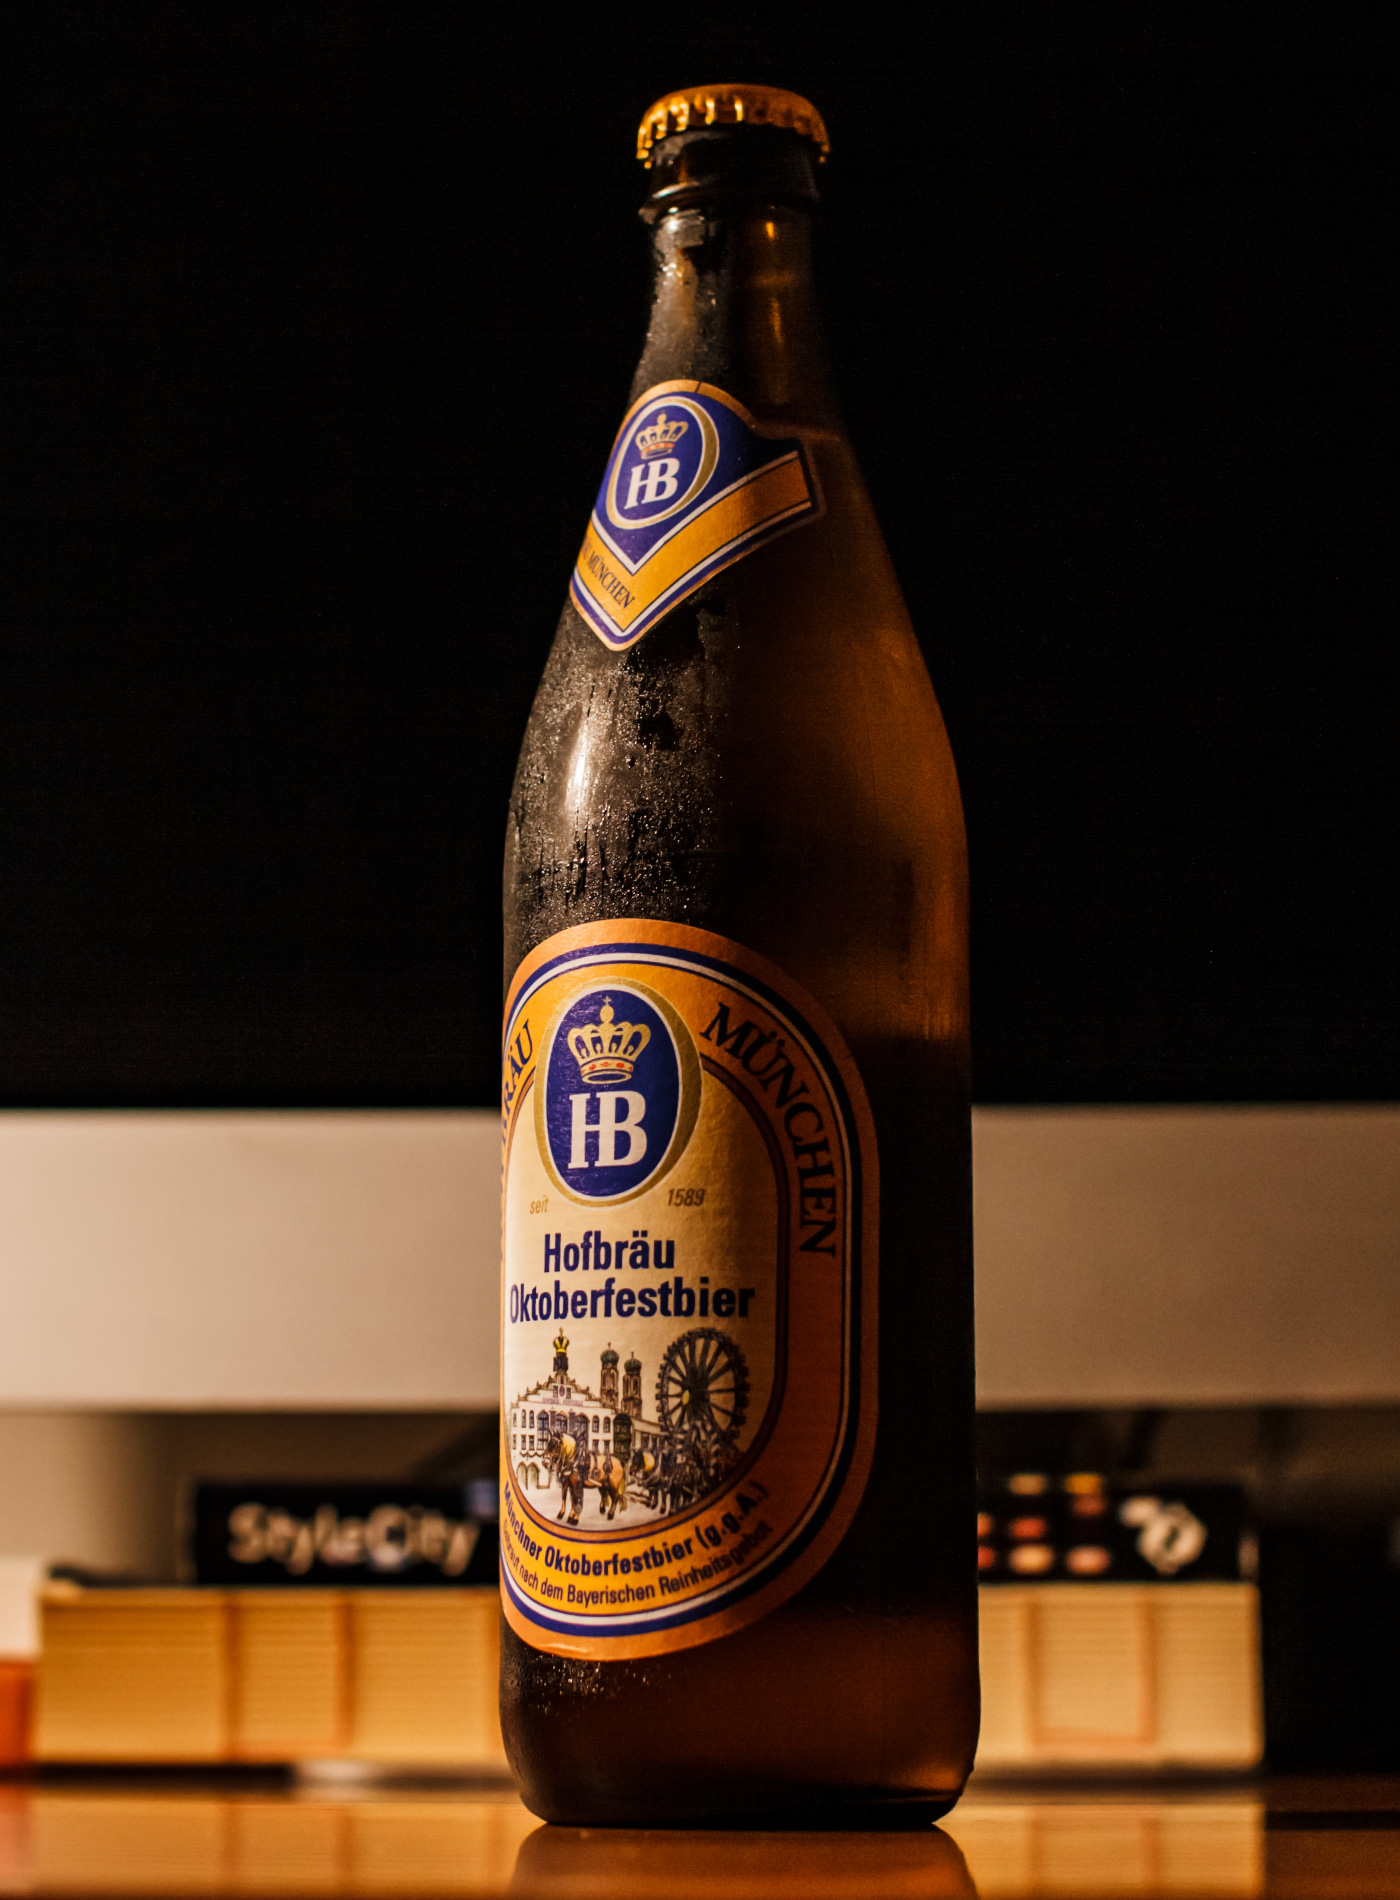 オクトバーフェストのために作られた限定輸入のビール